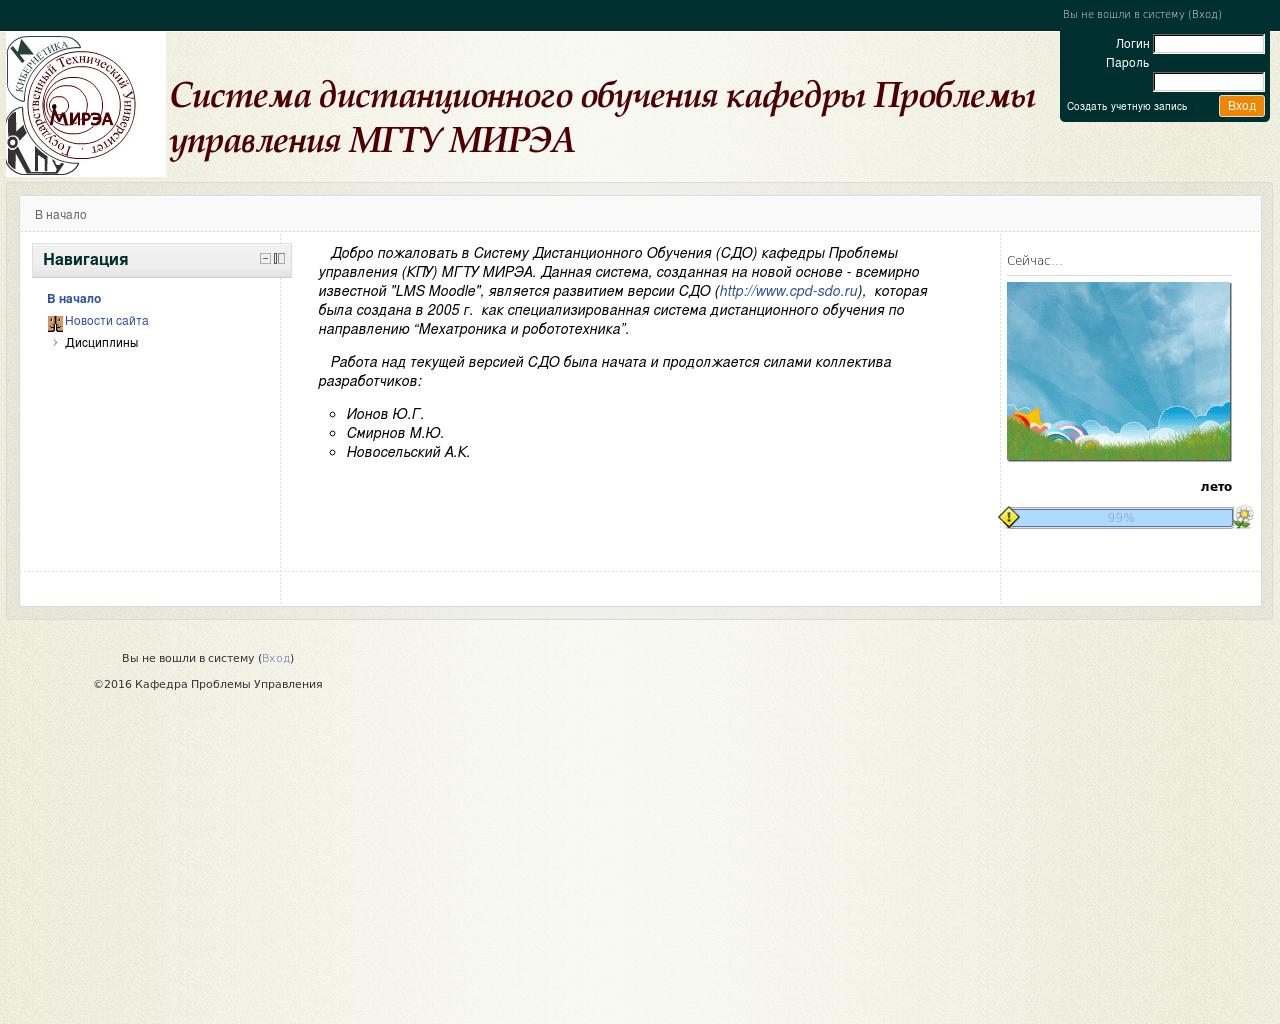 Изображение сайта cpdsdo.ru в разрешении 1280x1024